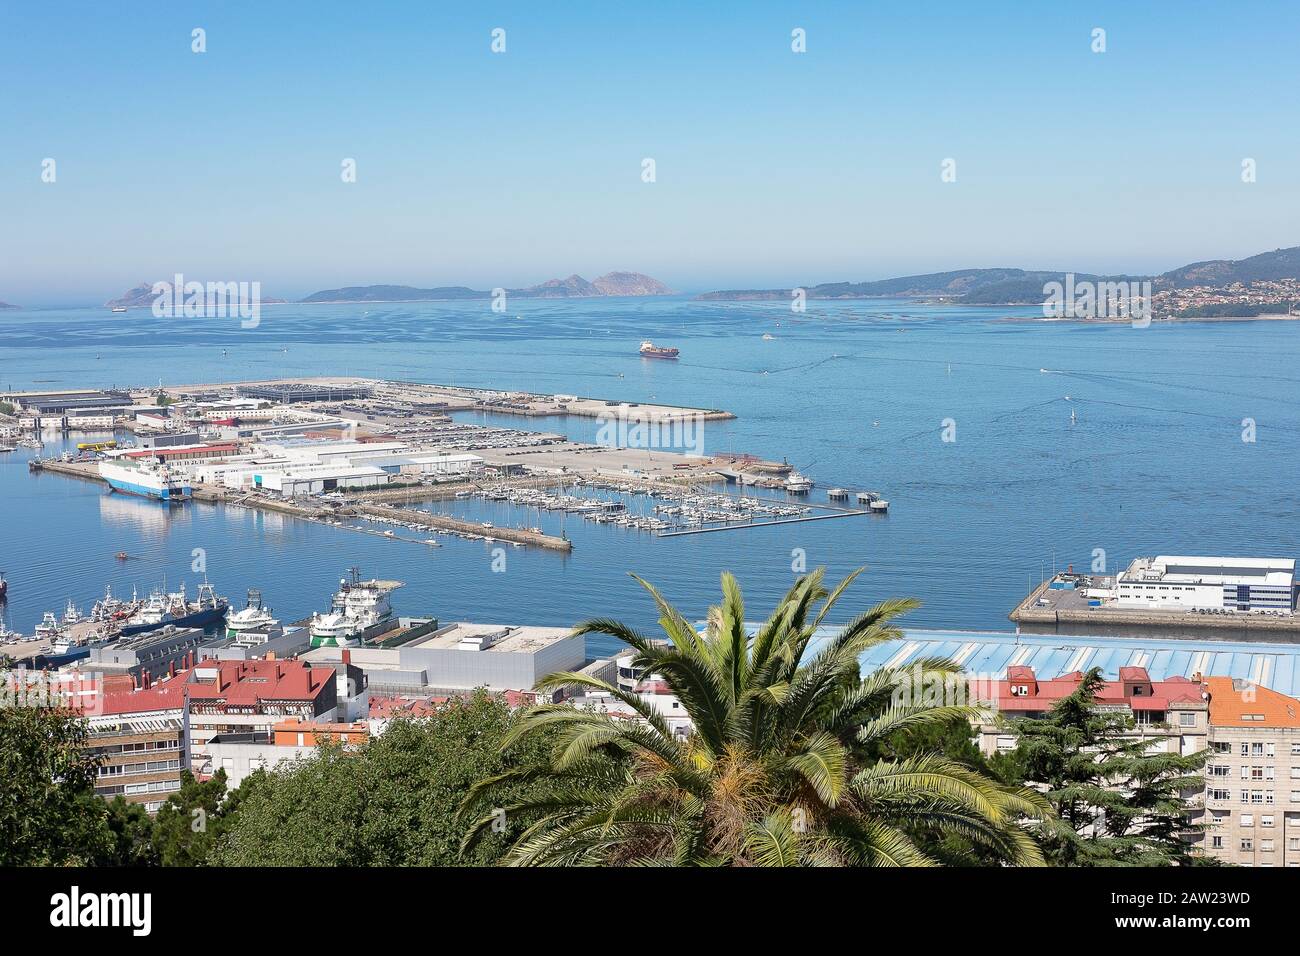 Vue aérienne de l'important port commercial et de pêche de Vigo en Galice, en Espagne Banque D'Images